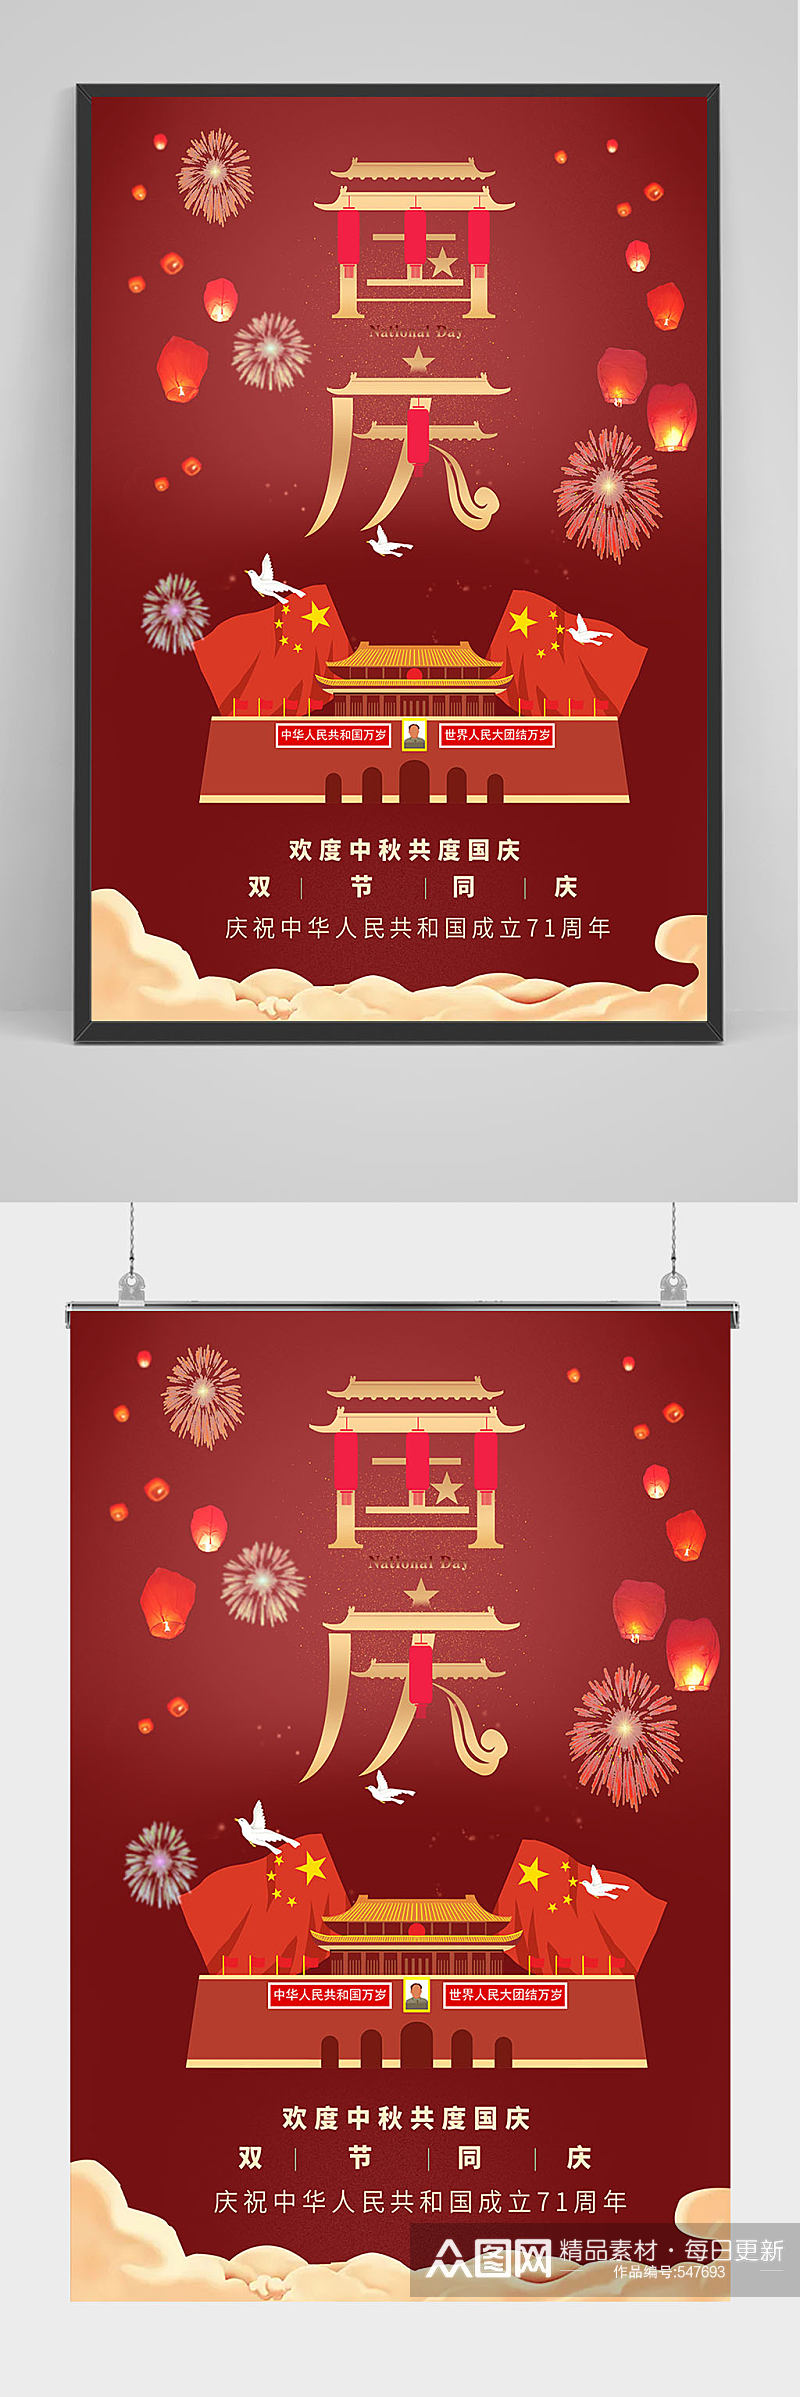 红色喜庆国庆海报设计素材